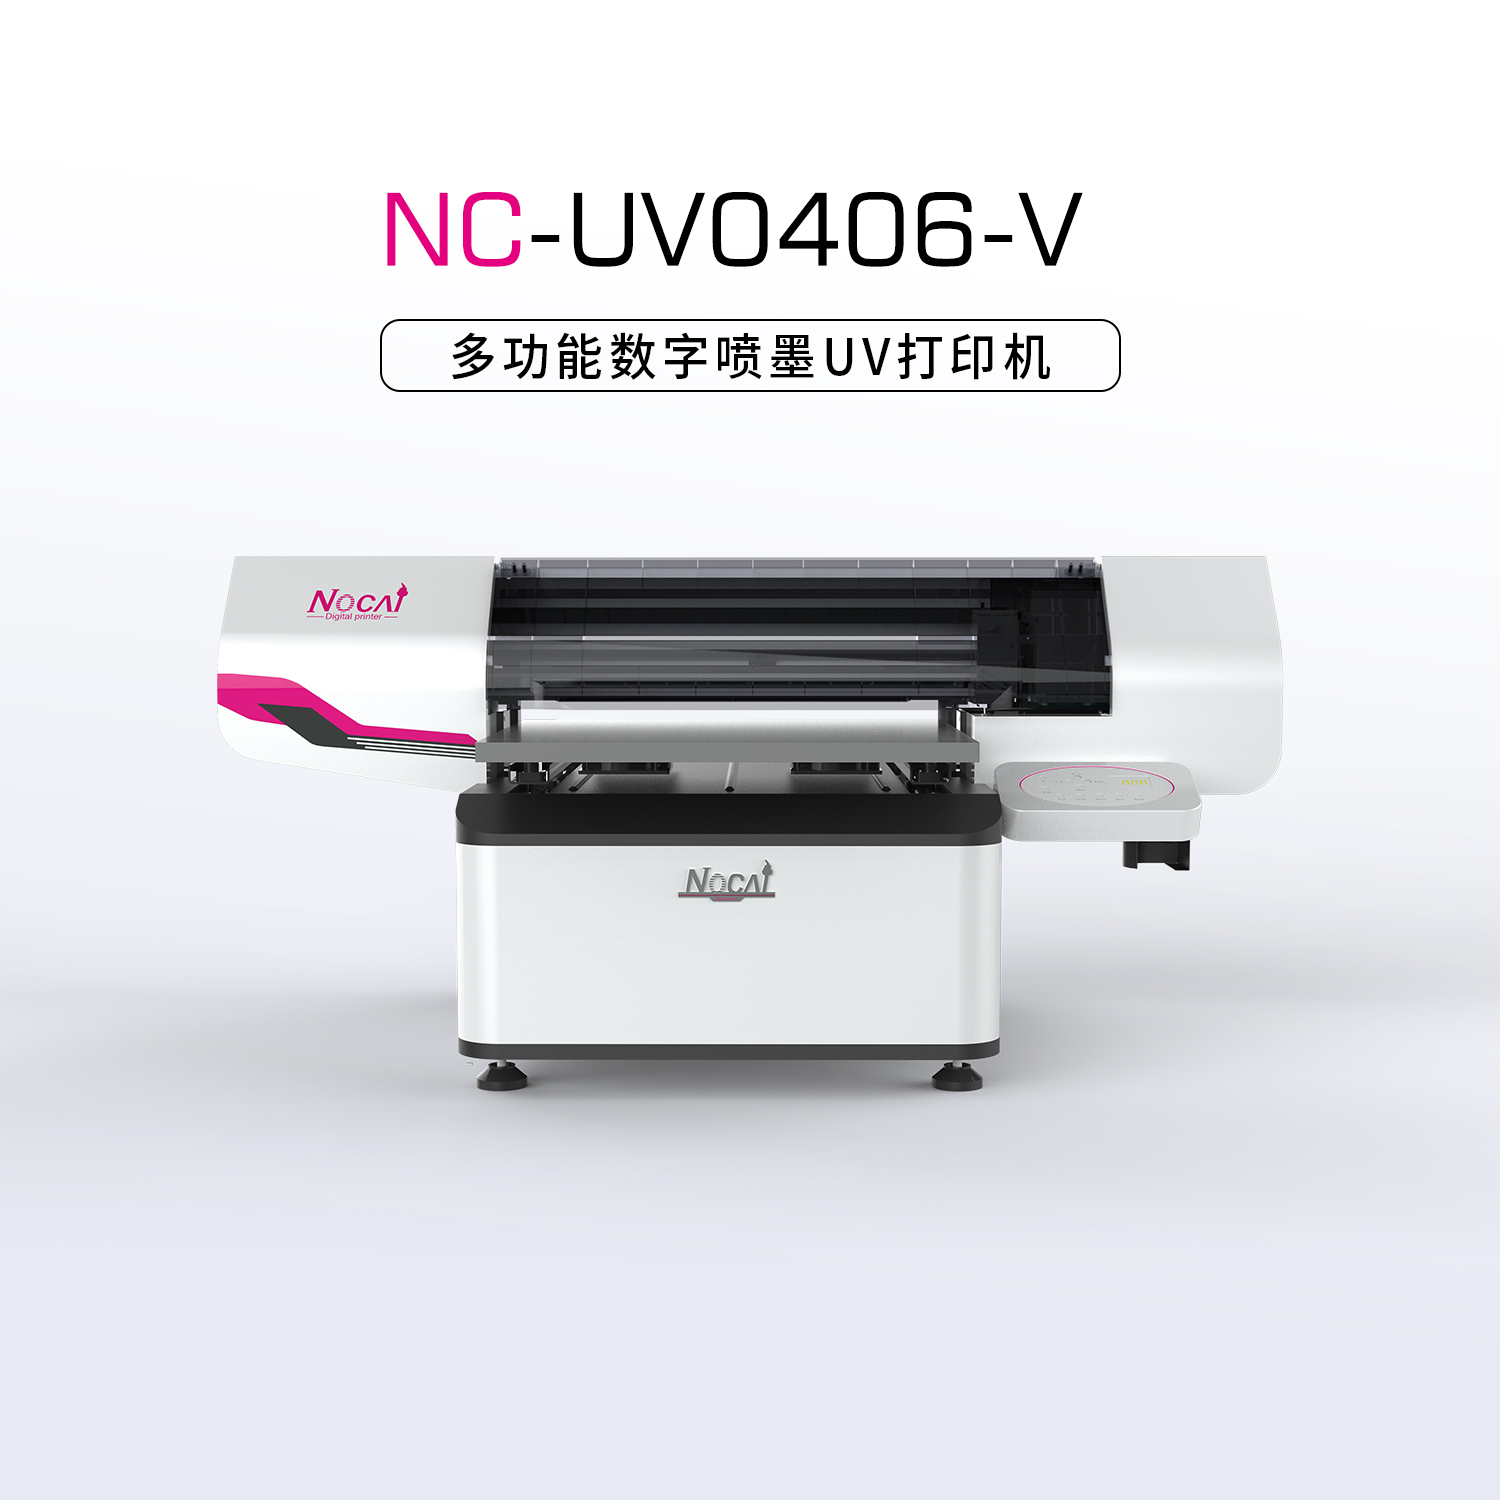 UV彩印机可以打印木板材料吗？